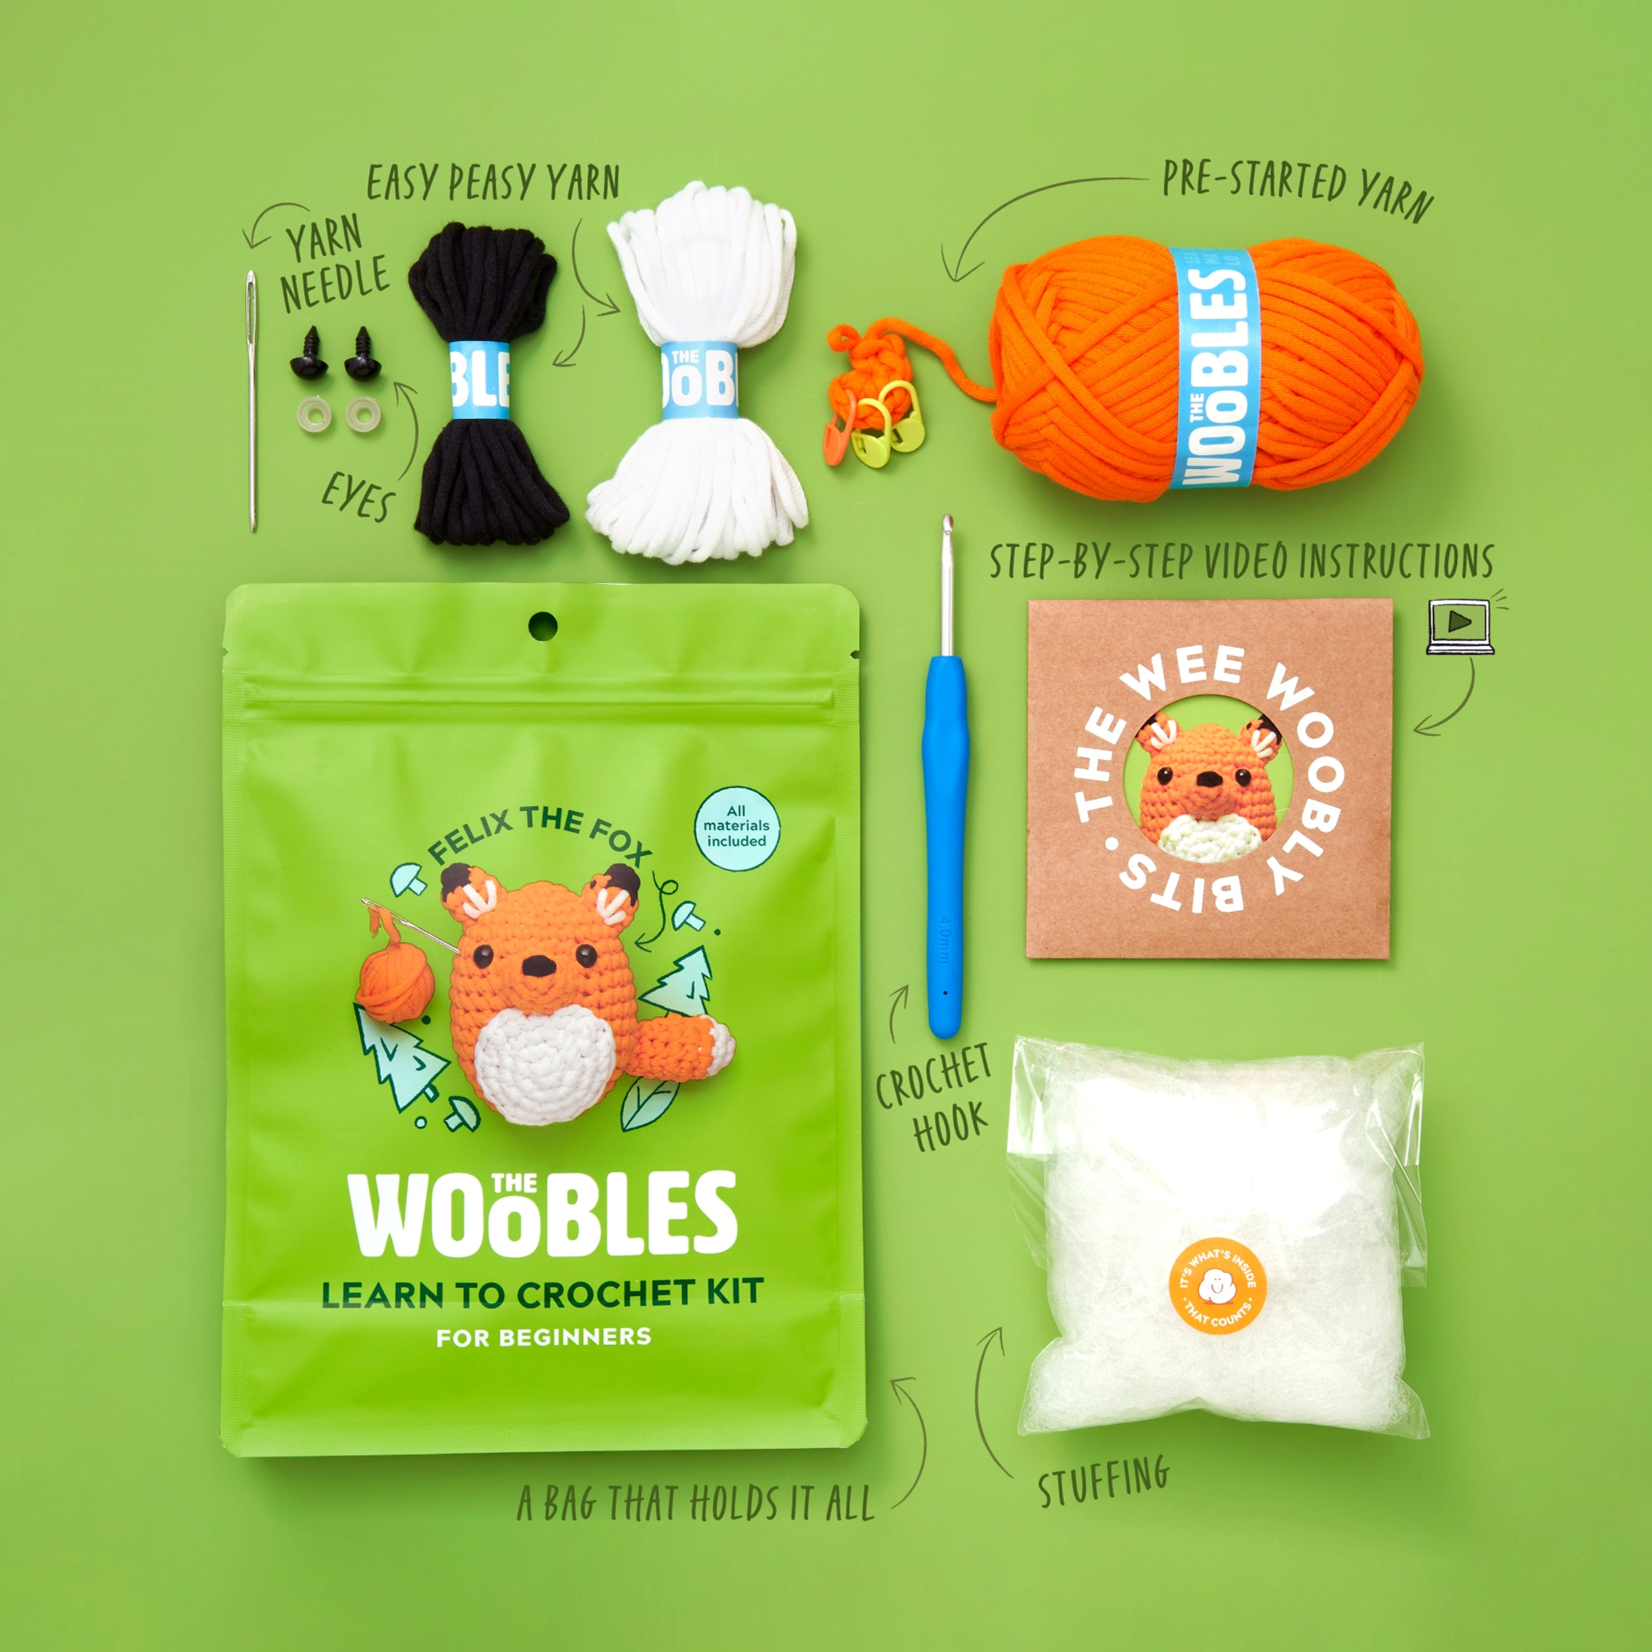 Woobles: Fox Beginner Crochet Kit